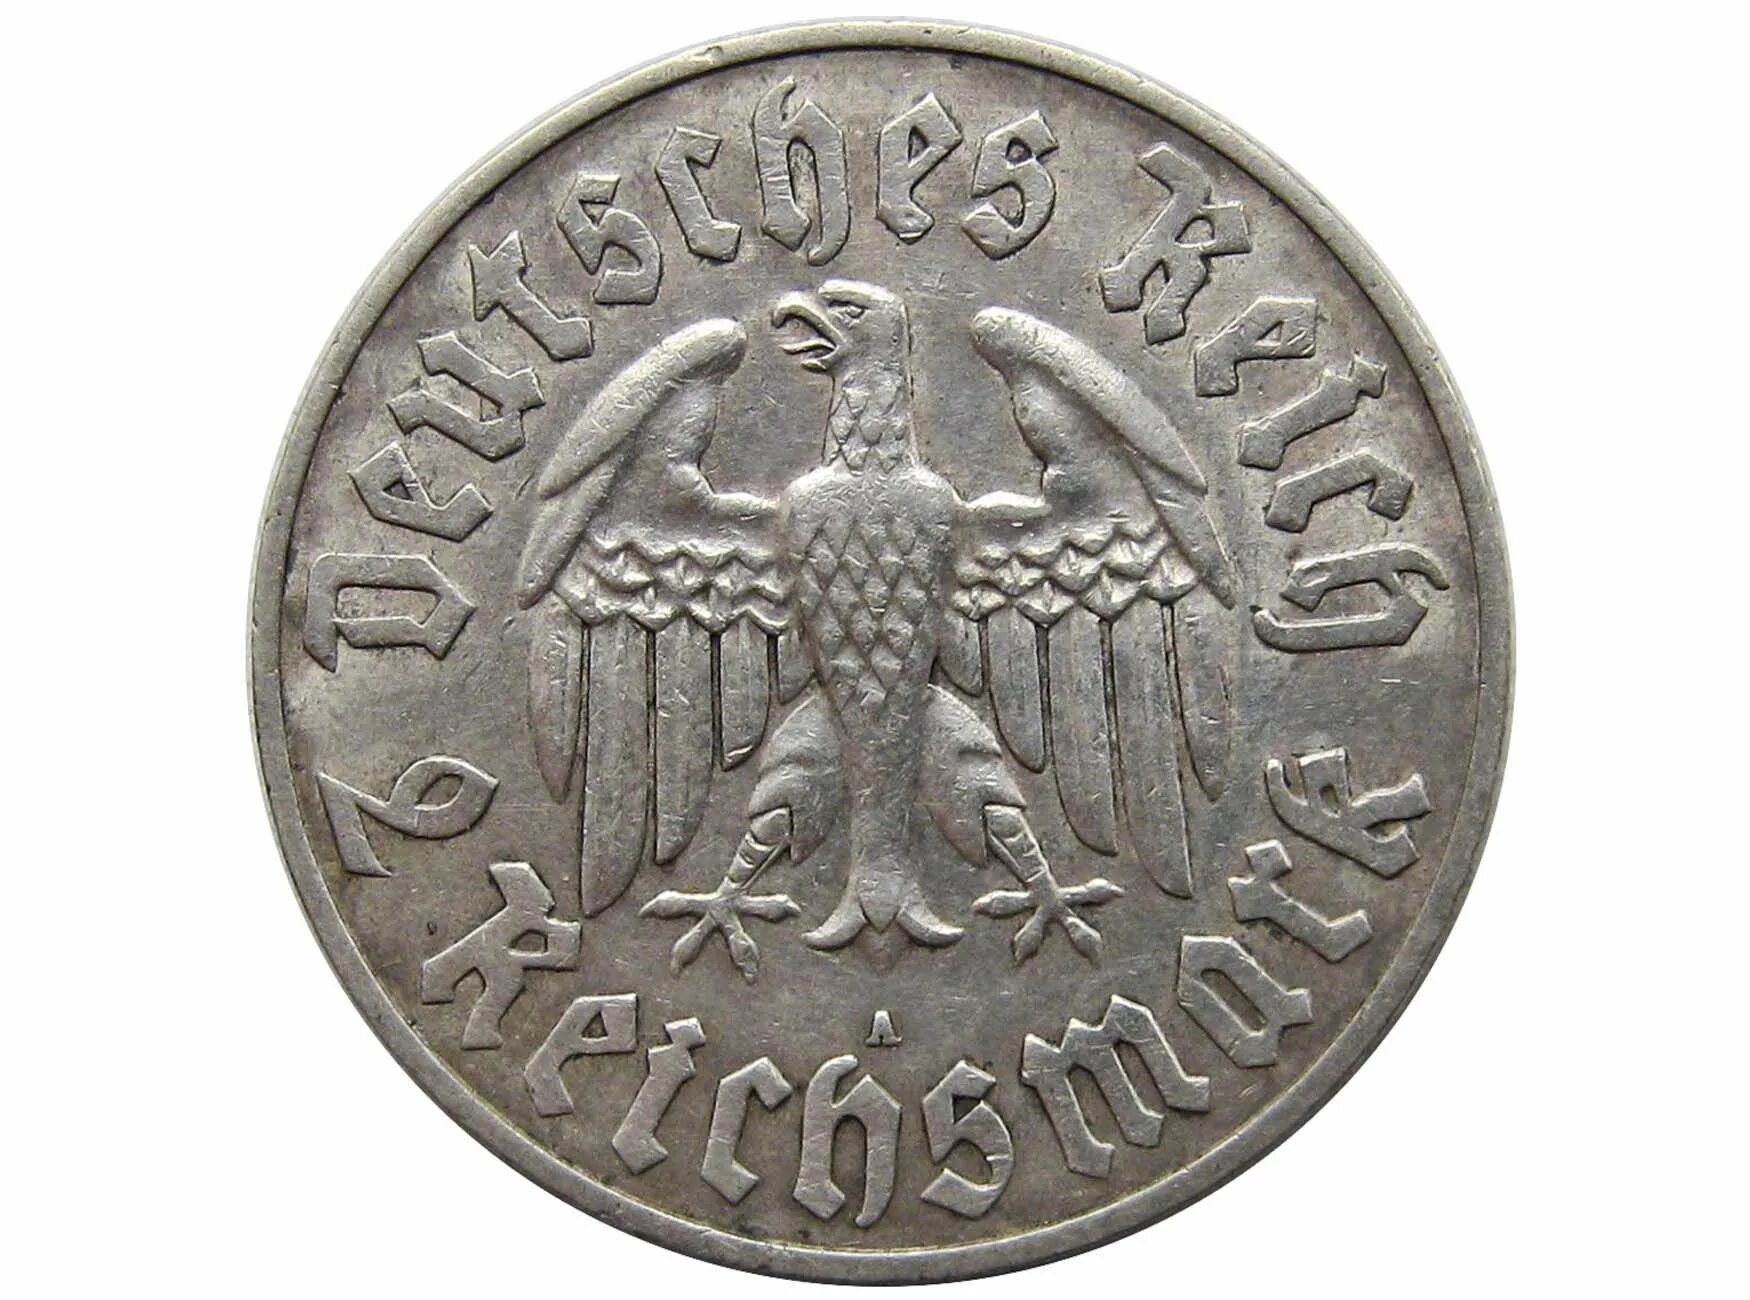 Купить германию 2. Немецкая марка 1933. Монета 1933г в США со свастикой. 2 Марки 1933 Лютер копия.